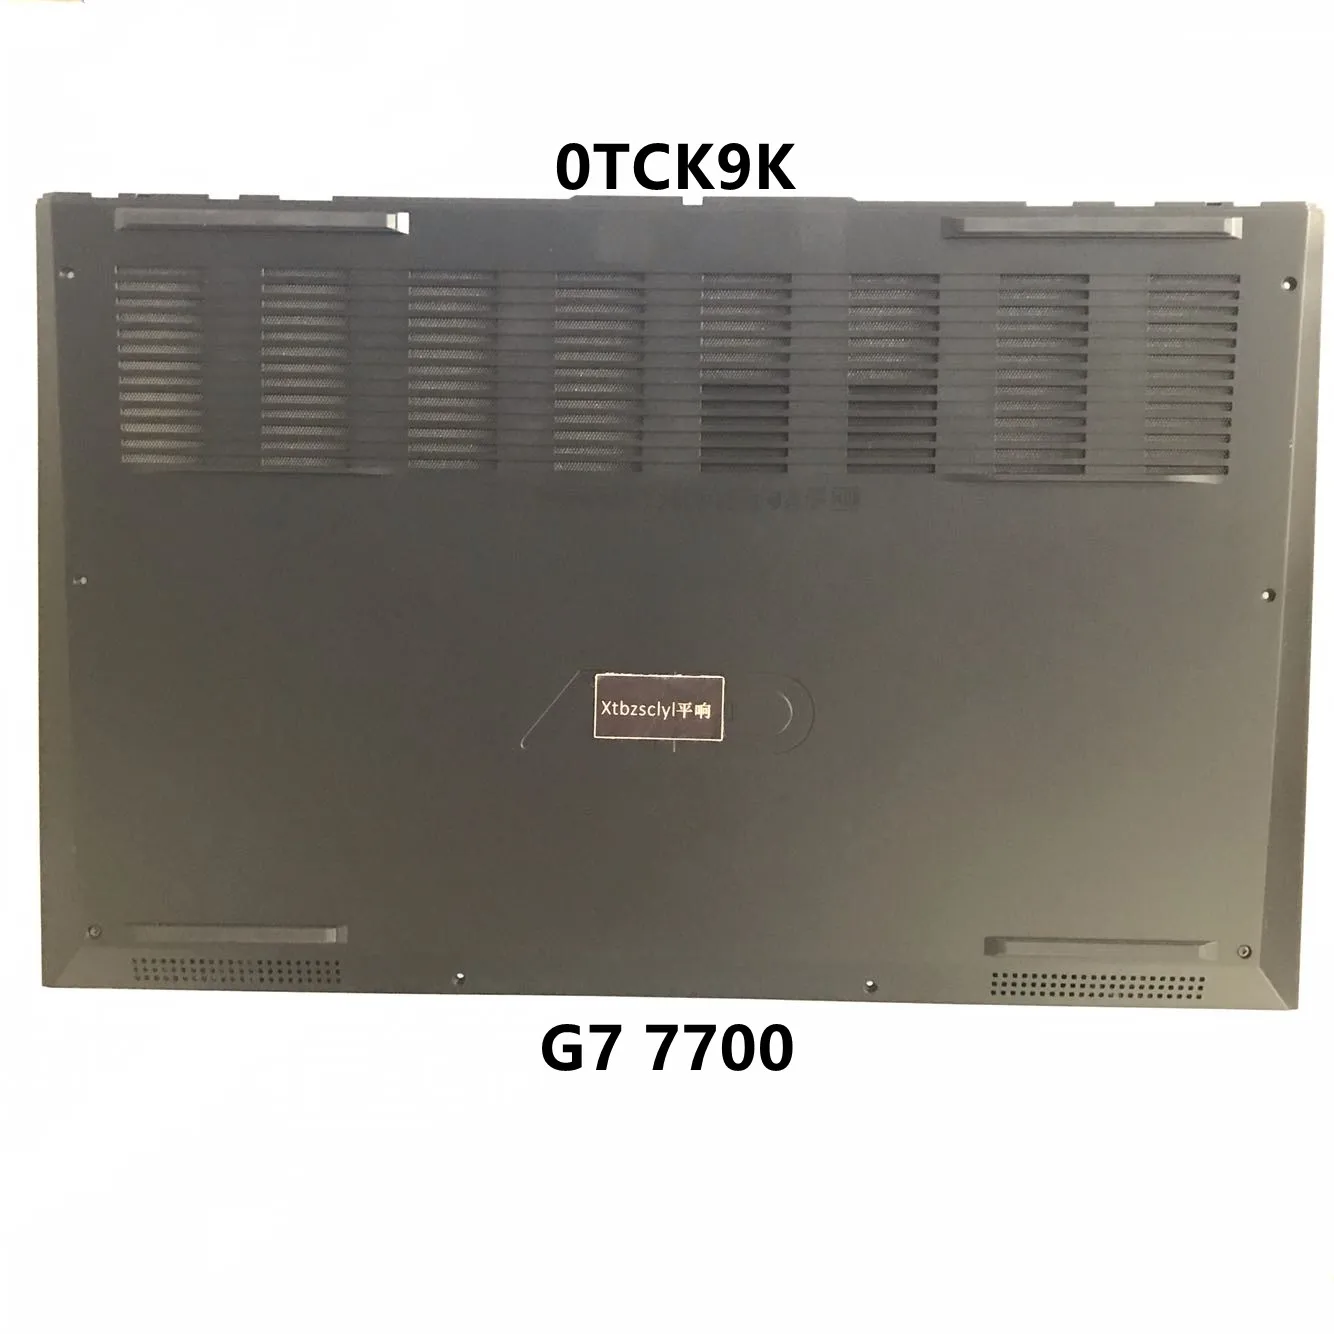 

New For Dell G7 7700 bottom cover cover case laptop case base D shell TCK9K 0TCK9K